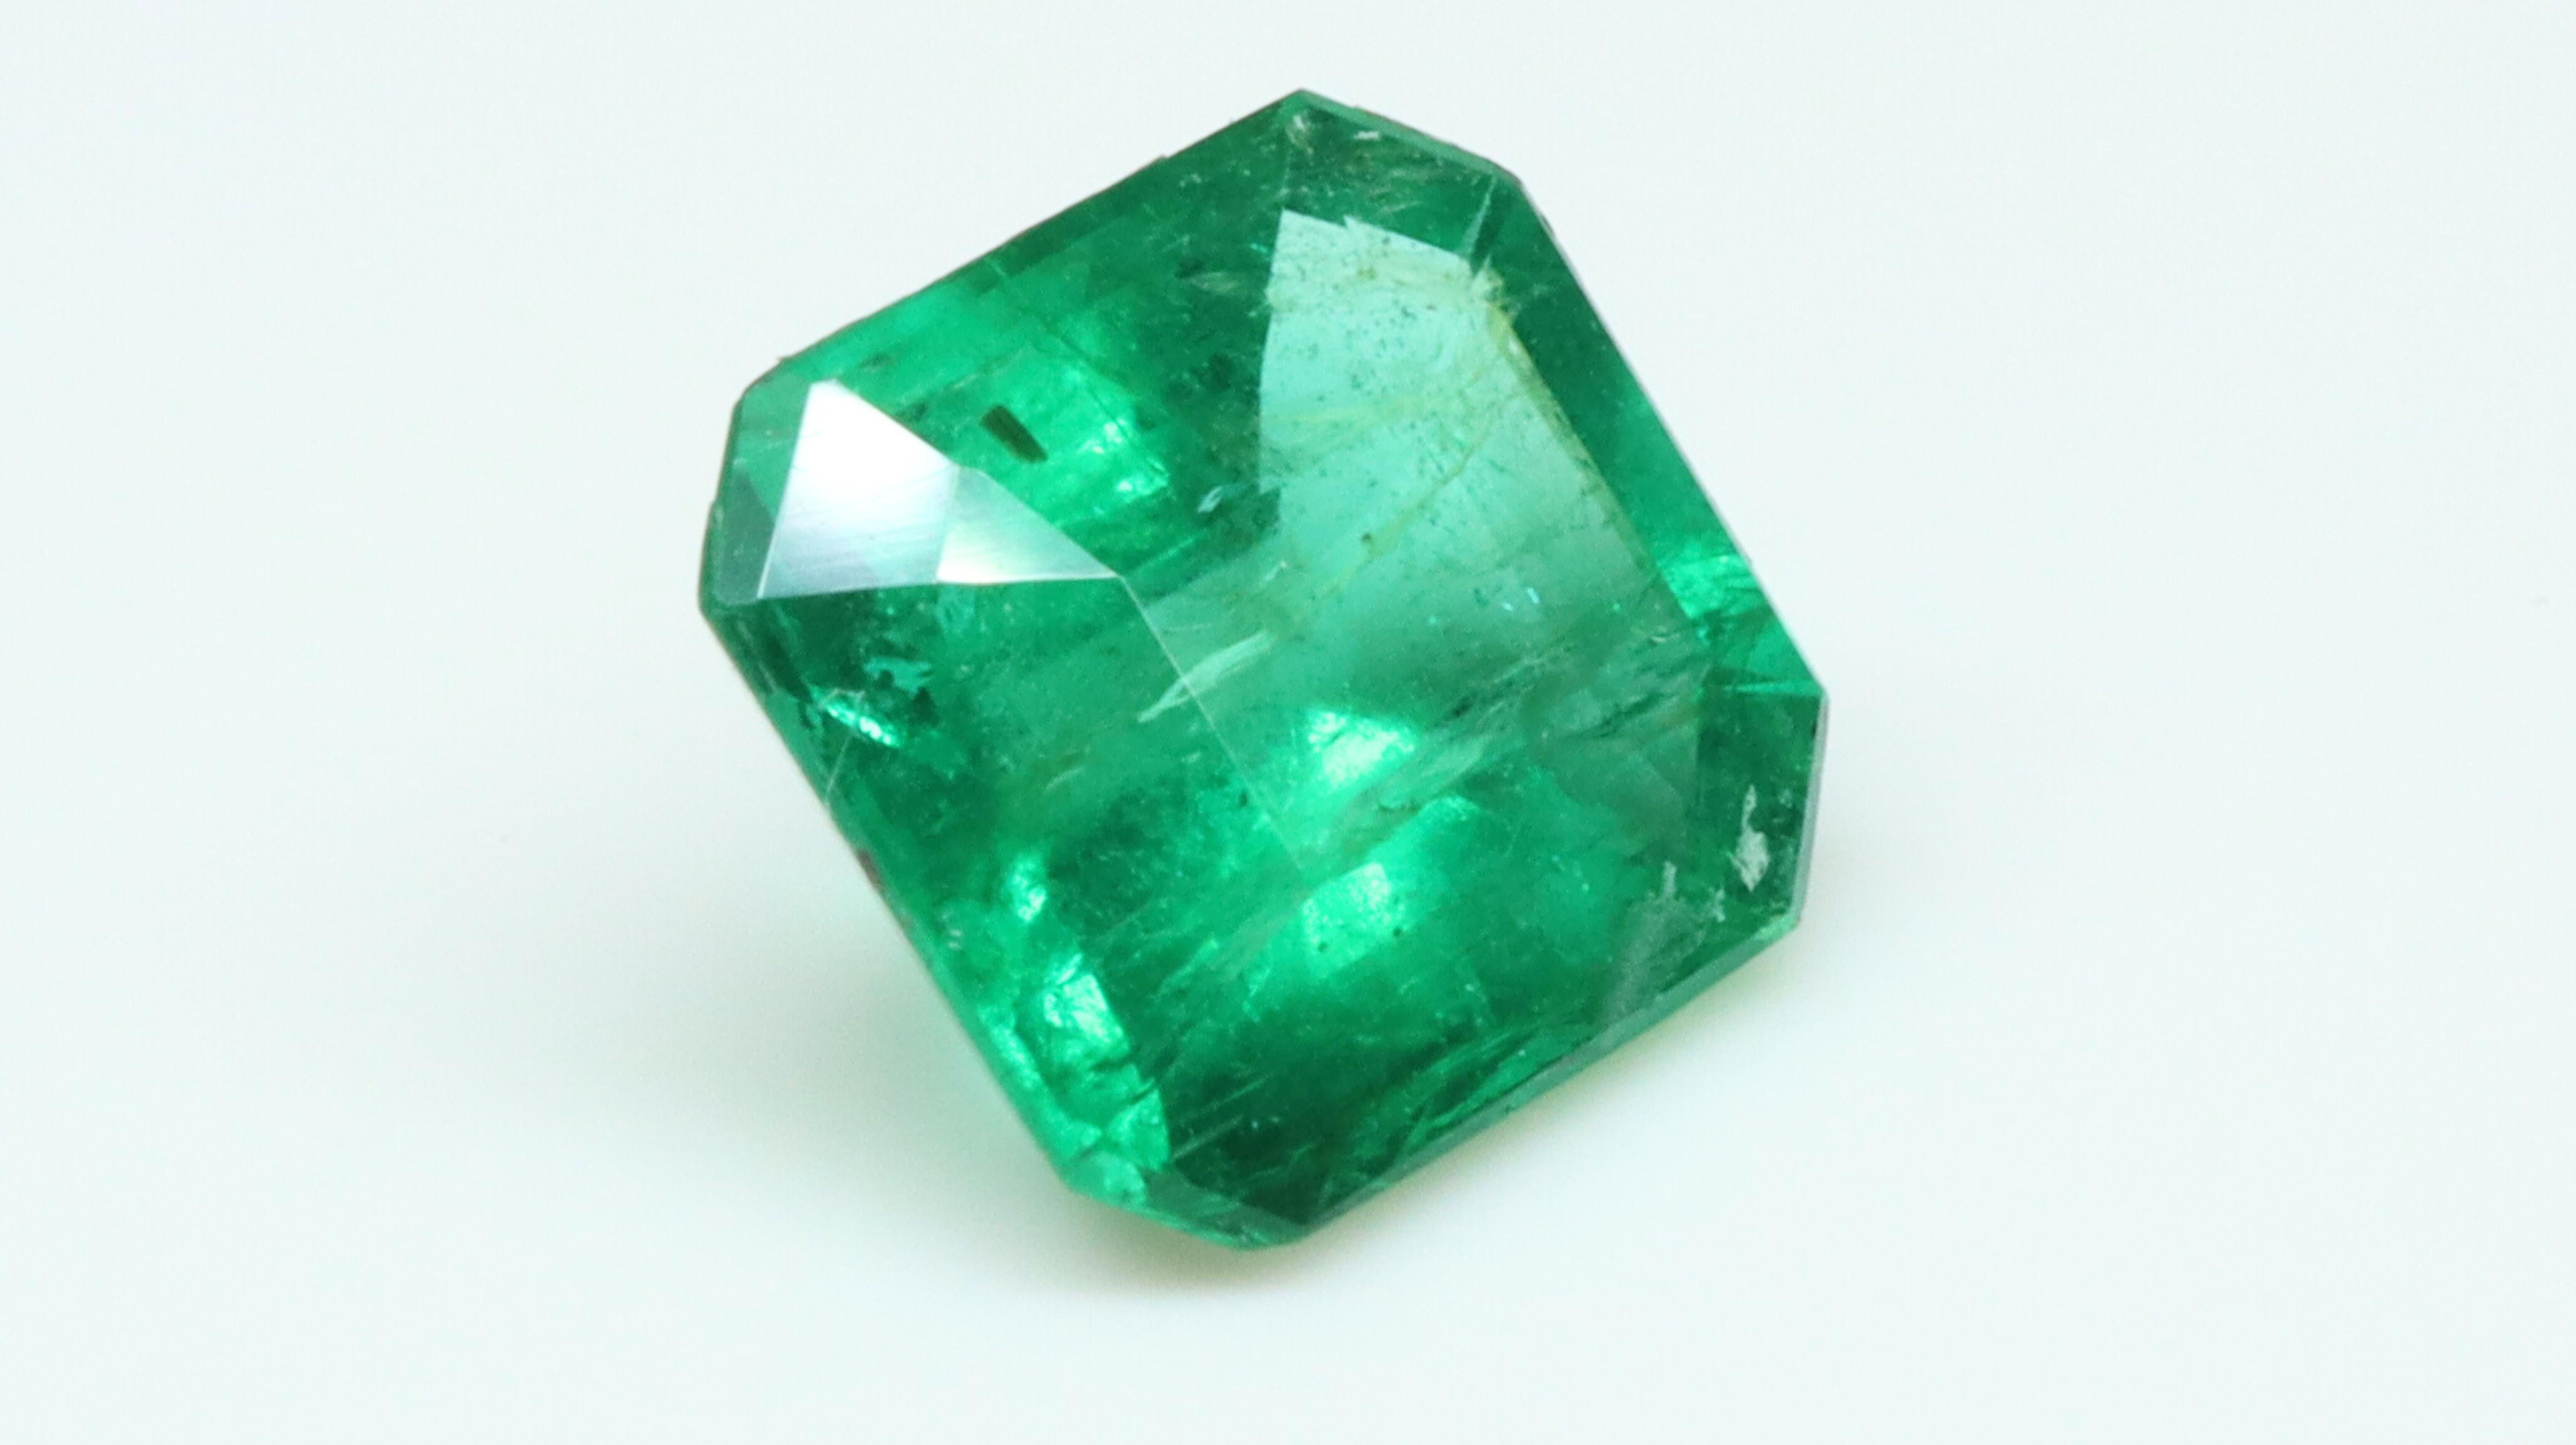 Dieser Smaragd hat einen sehr intensiven Grünton,  mit kräftigen Farbtönen und verteilten Farben. Einschlüsse sind leicht im Ton und Stein ist schön.

Smaragde sind von Natur aus poröse Steine mit oberflächlichen Rissen, und um ihre Klarheit zu